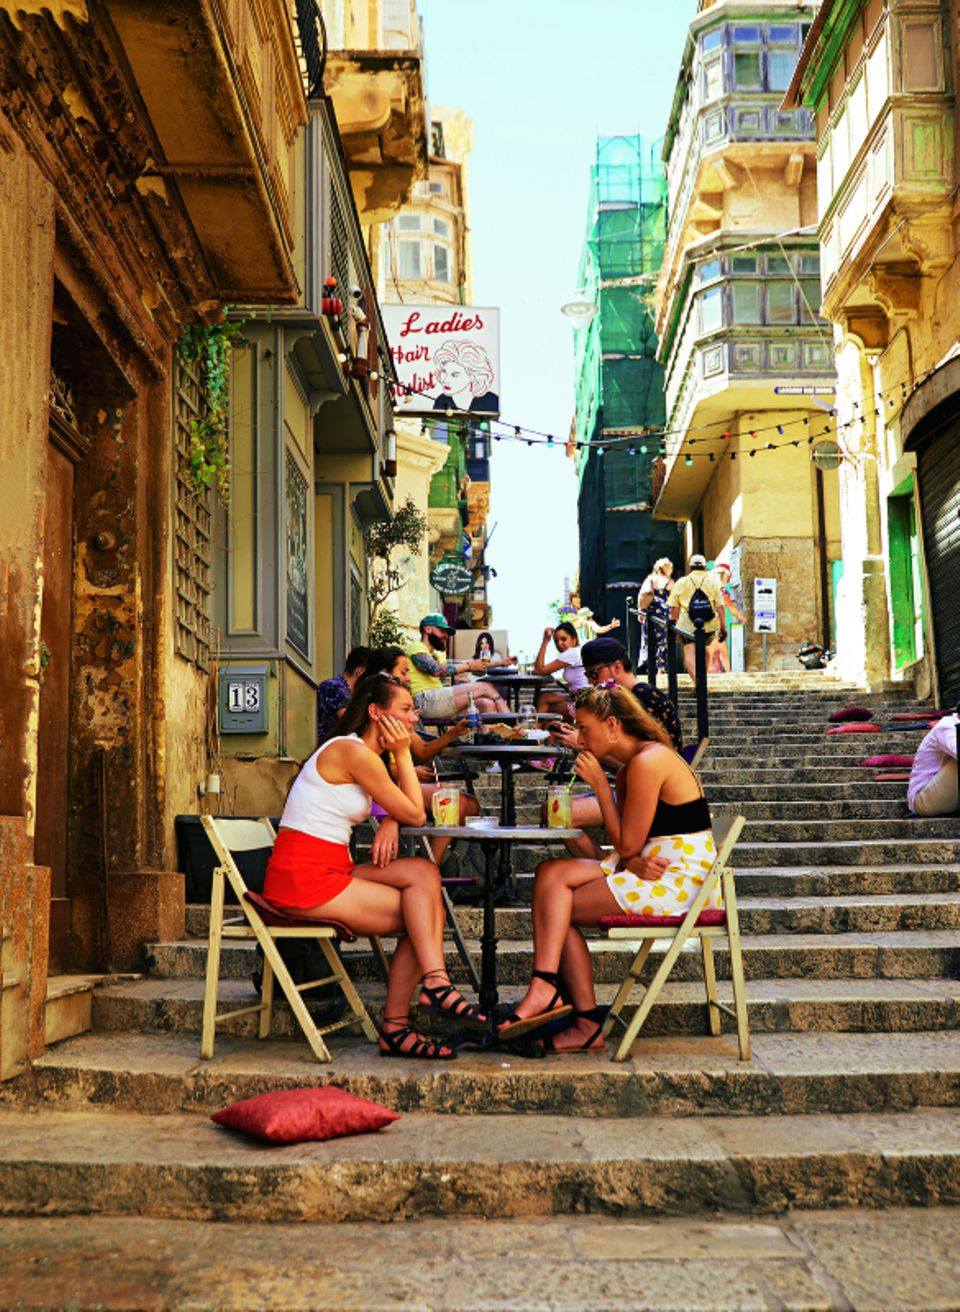 Viele der Gassen von Valletta sind Treppen, die zum Meer führen.